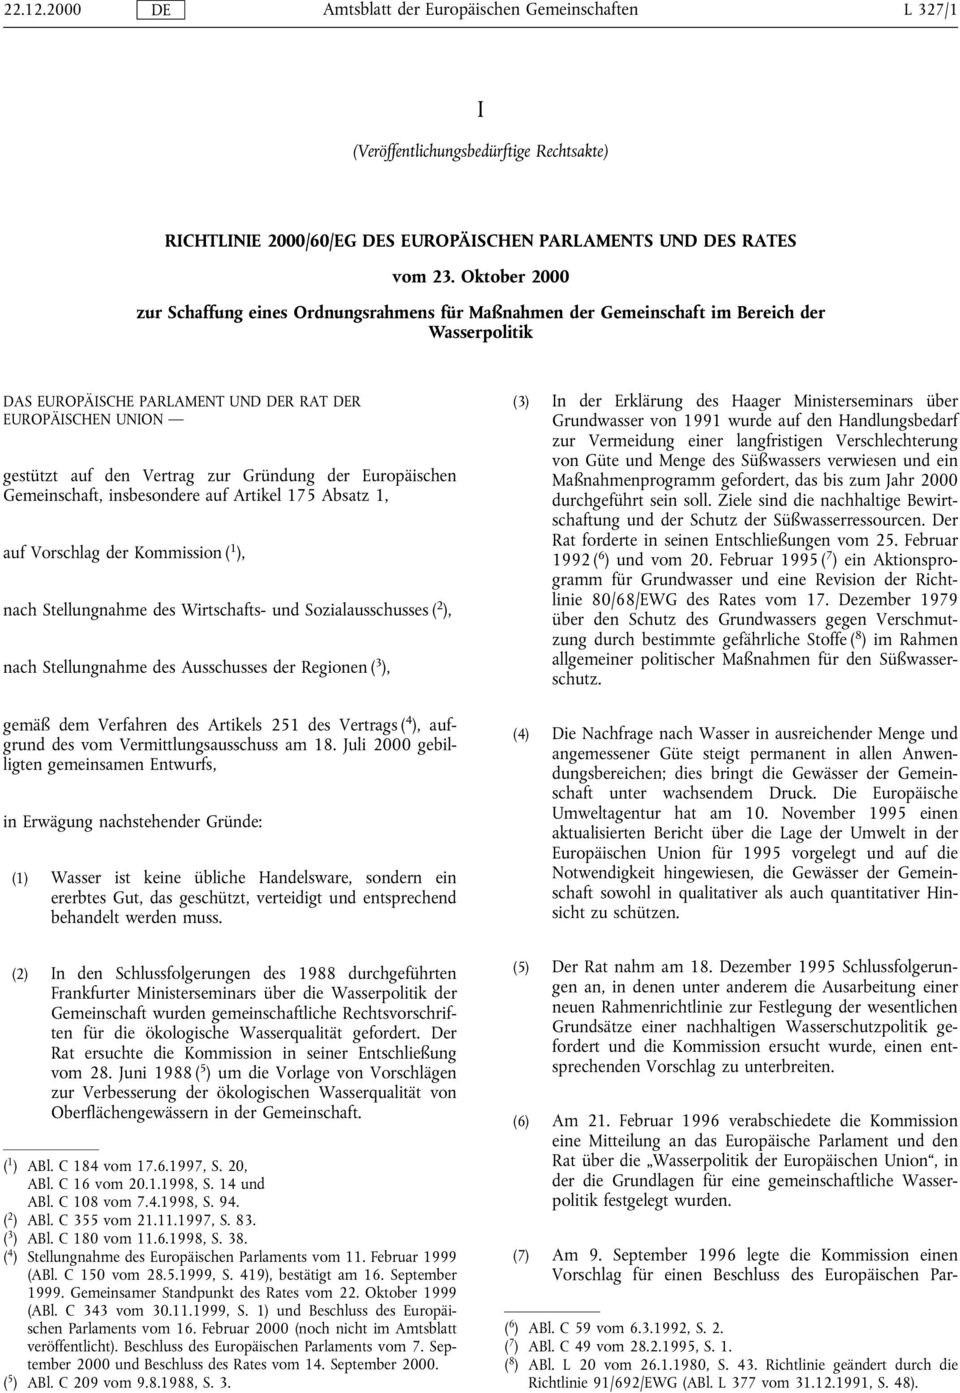 Gründung der Europäischen Gemeinschaft, insbesondere auf Artikel 175 Absatz 1, auf Vorschlag der Kommission ( 1 ), nach Stellungnahme des Wirtschafts- und Sozialausschusses ( 2 ), nach Stellungnahme